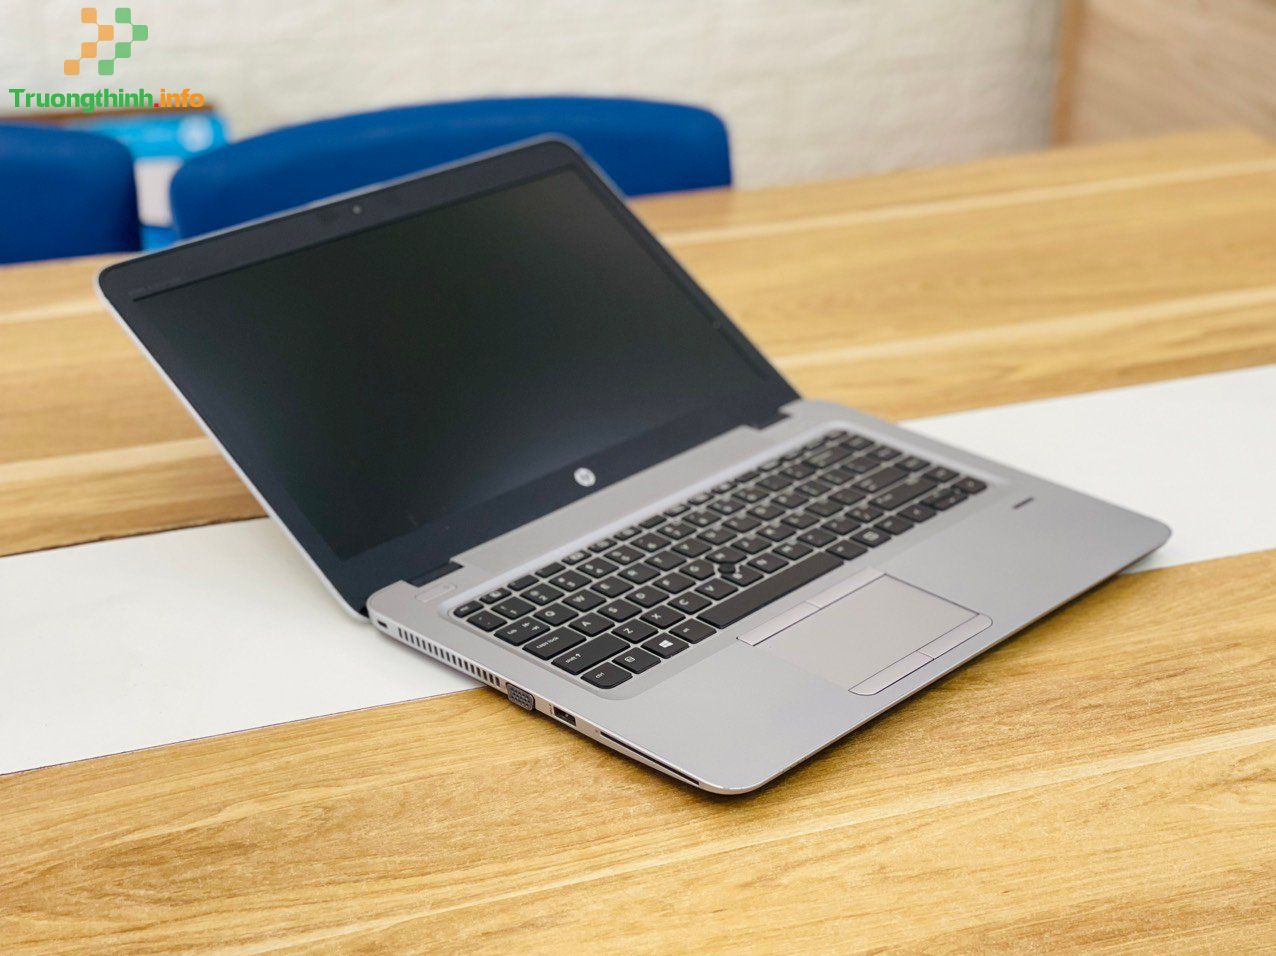 Mua Bán Sửa Thay Màn Hình Laptop HP 840 G4 - Laptop Giá Rẻ | Vi Tính Trường Thịnh 